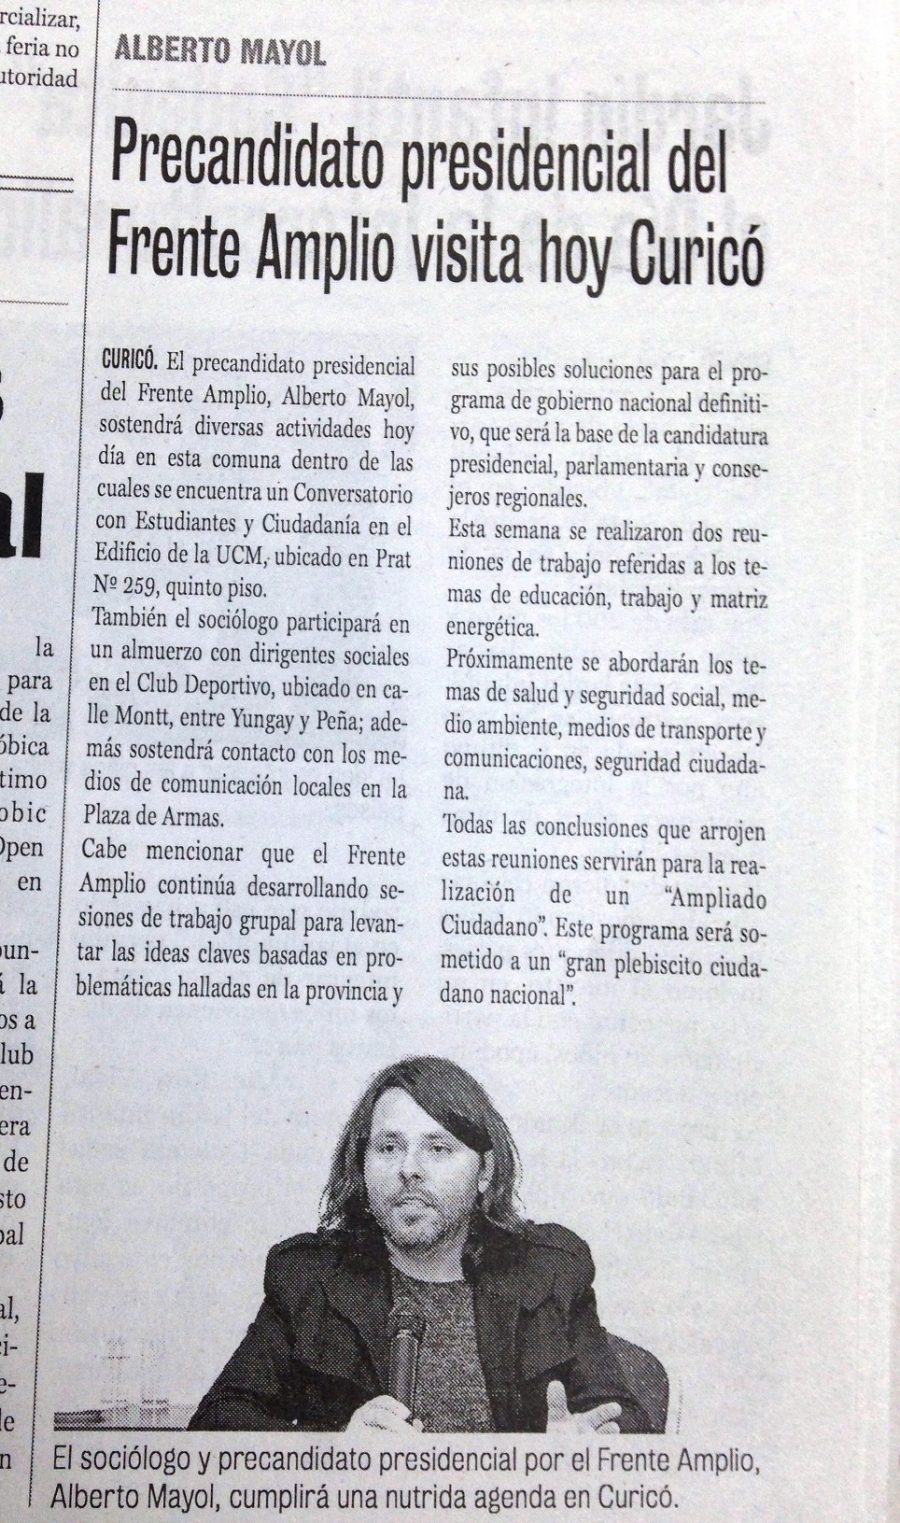 16 de mayo en Diario La Prensa: “Precandidato presidencial del Frente Amplio visita hoy Curicó”